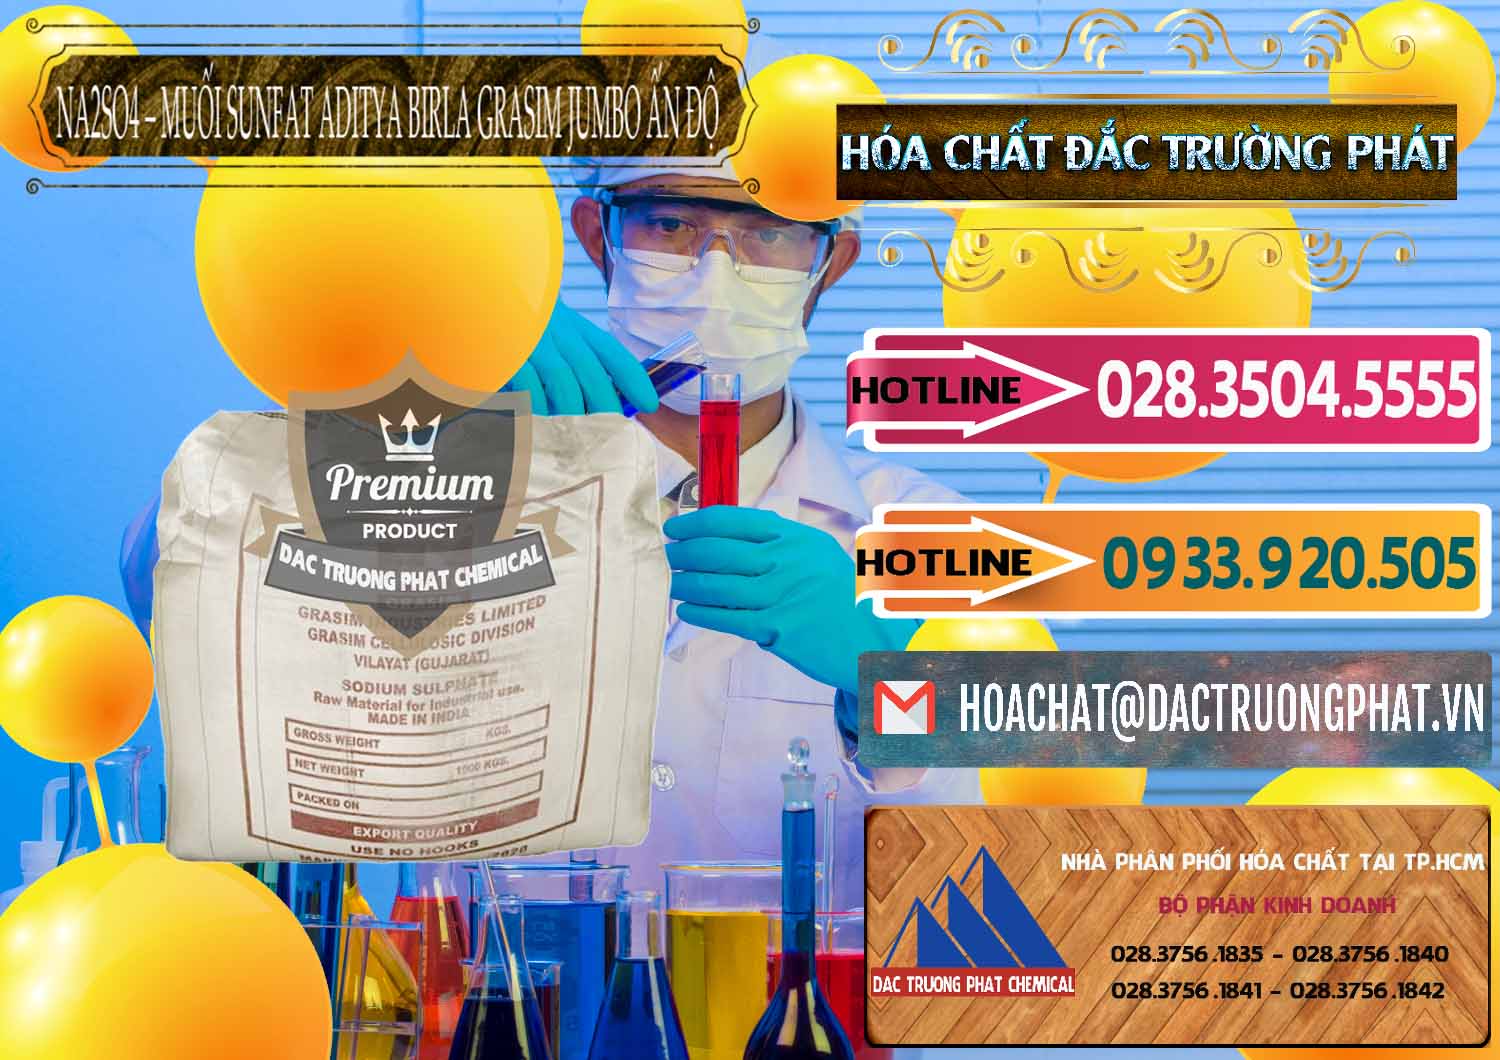 Chuyên bán - cung ứng Sodium Sulphate - Muối Sunfat Na2SO4 Jumbo Bành Aditya Birla Grasim Ấn Độ India - 0357 - Nơi cung cấp và nhập khẩu hóa chất tại TP.HCM - dactruongphat.vn